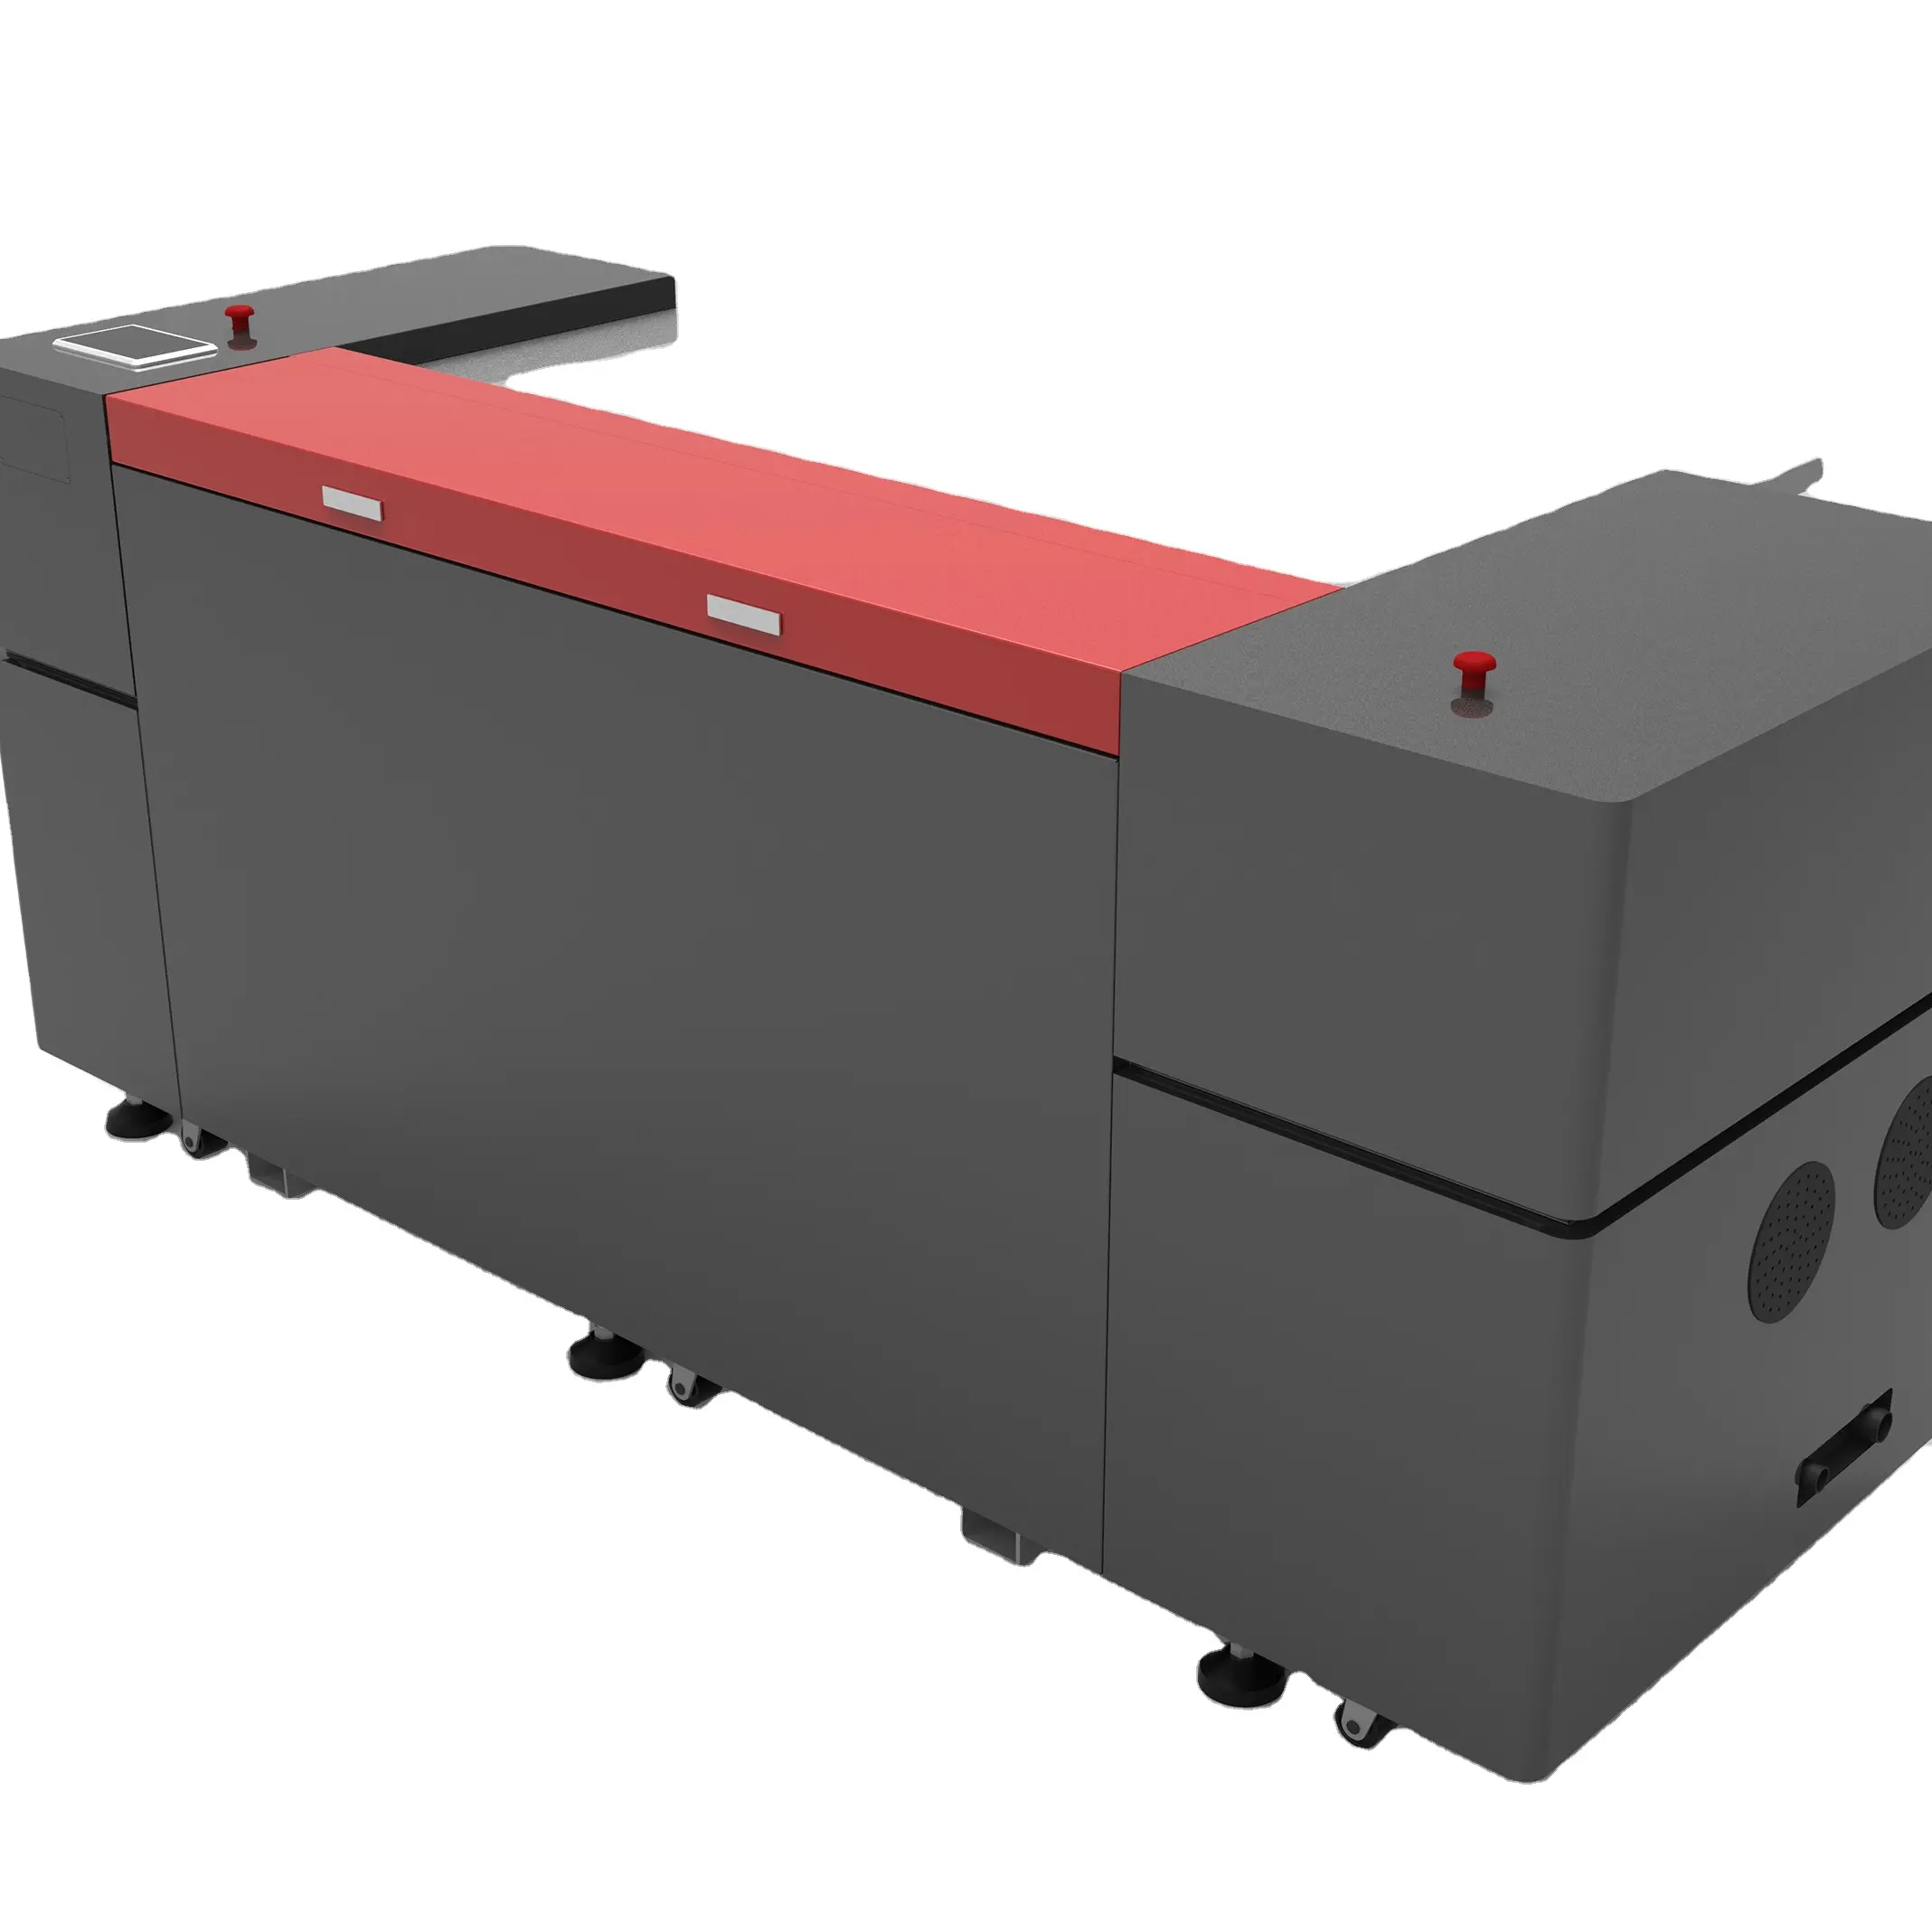 ماكينة صنع ألواح طباعة فلكسو أوتوماتيكية للأكياس السوداء من Mcfarlane لعب 2000 قطعة طباعة سوداء منتج رائج لعام 2019 معتمد بشهادة CE 220 فولت